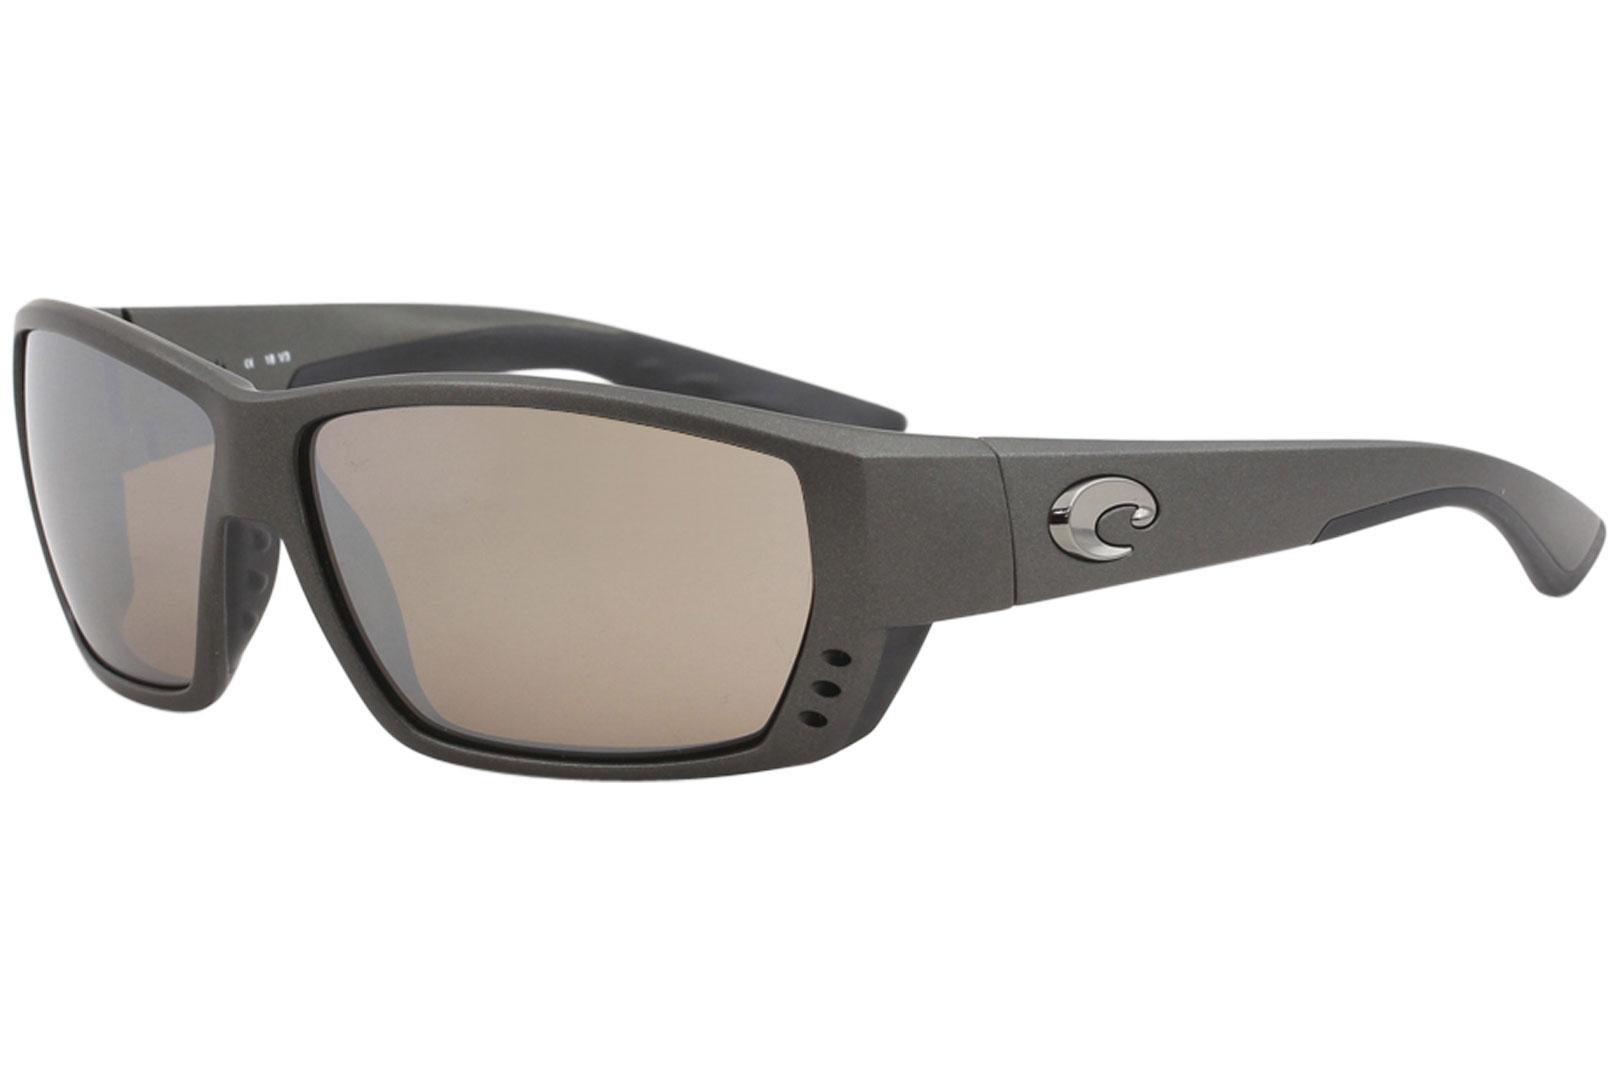 Costa Del Mar Men's Tuna Alley Sport Polarized Sunglasses - Matte Steel Grey/Polarized Copper Silver Mirror - Lens 62 Bridge 13 Temple 115mm